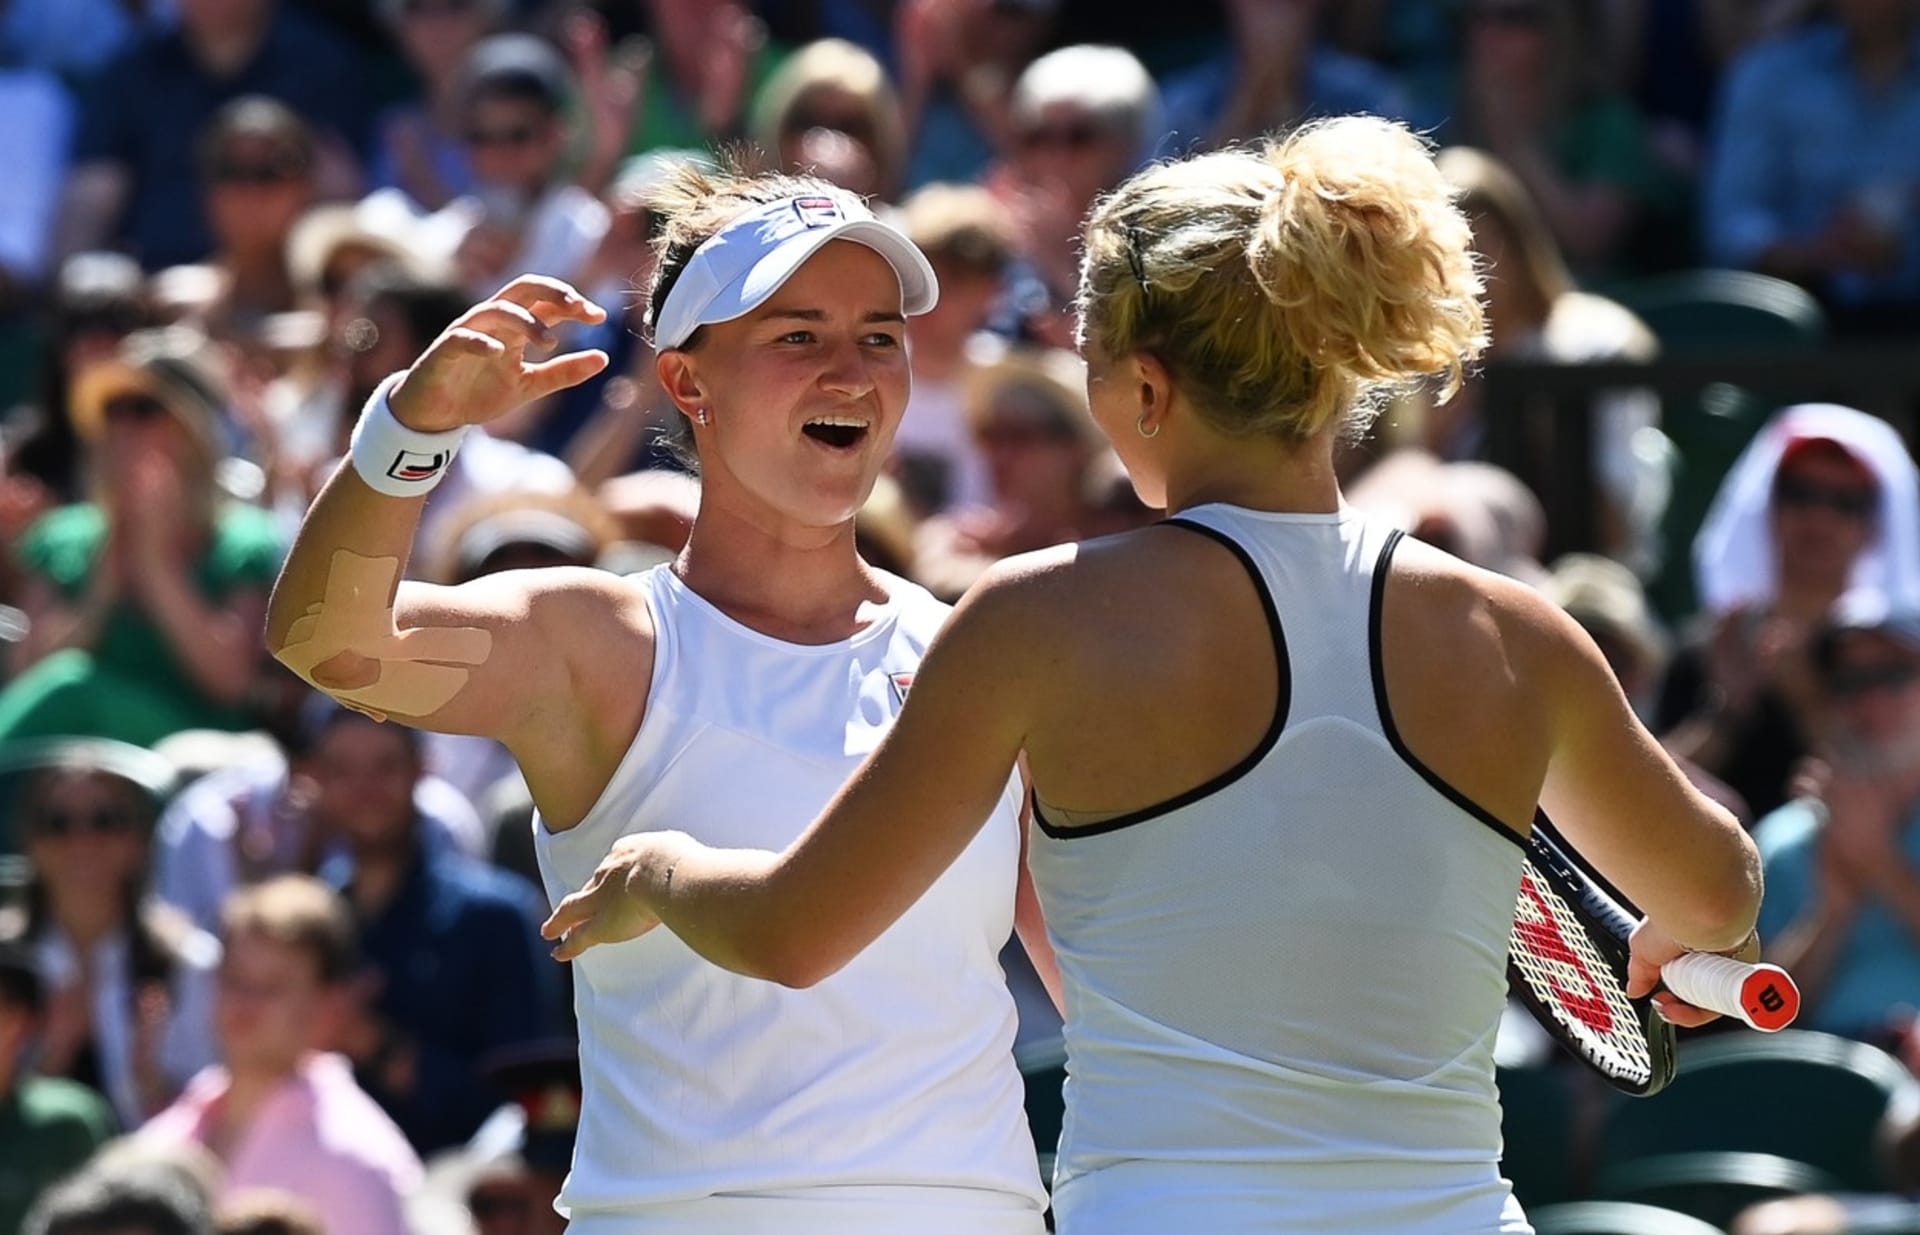 Tenistky Krejčíková a Siniaková si po čtyřech letech zahrají finále Wimbledonu.